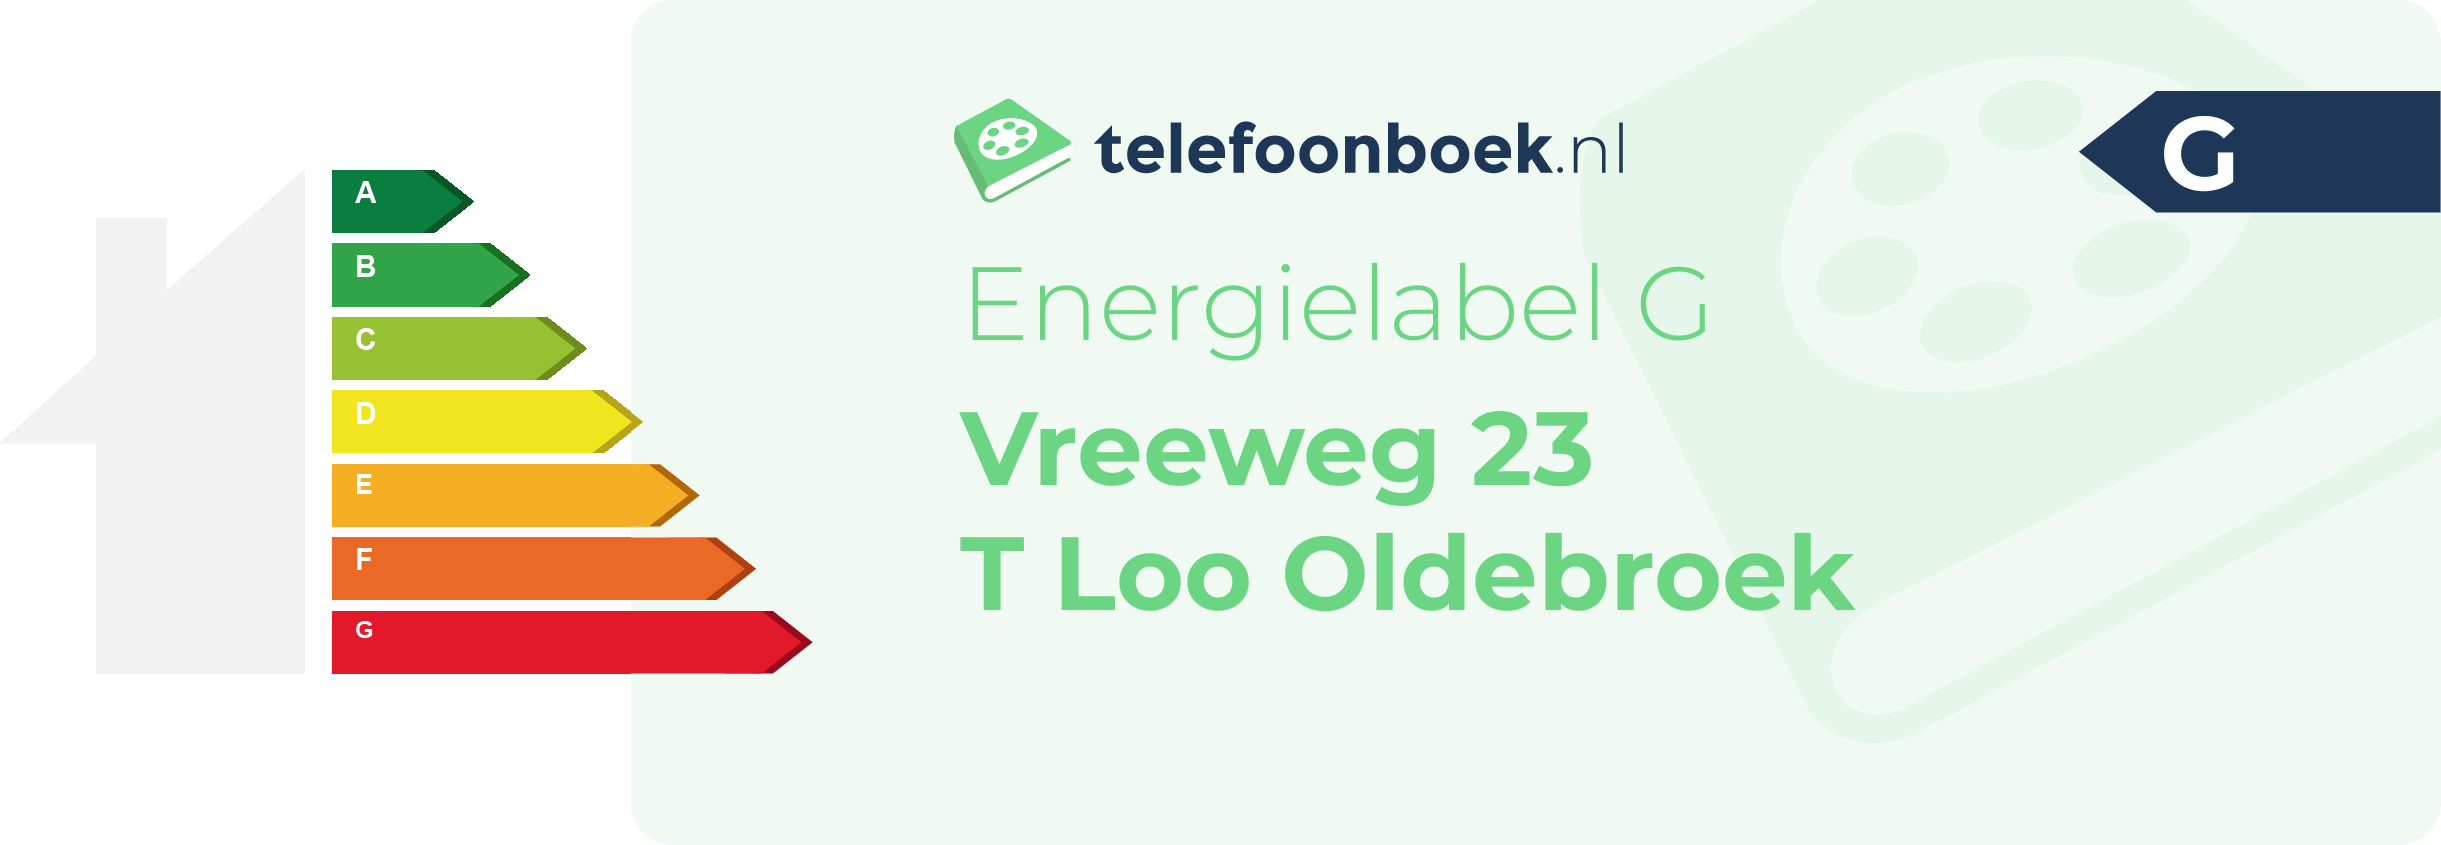 Energielabel Vreeweg 23 T Loo Oldebroek